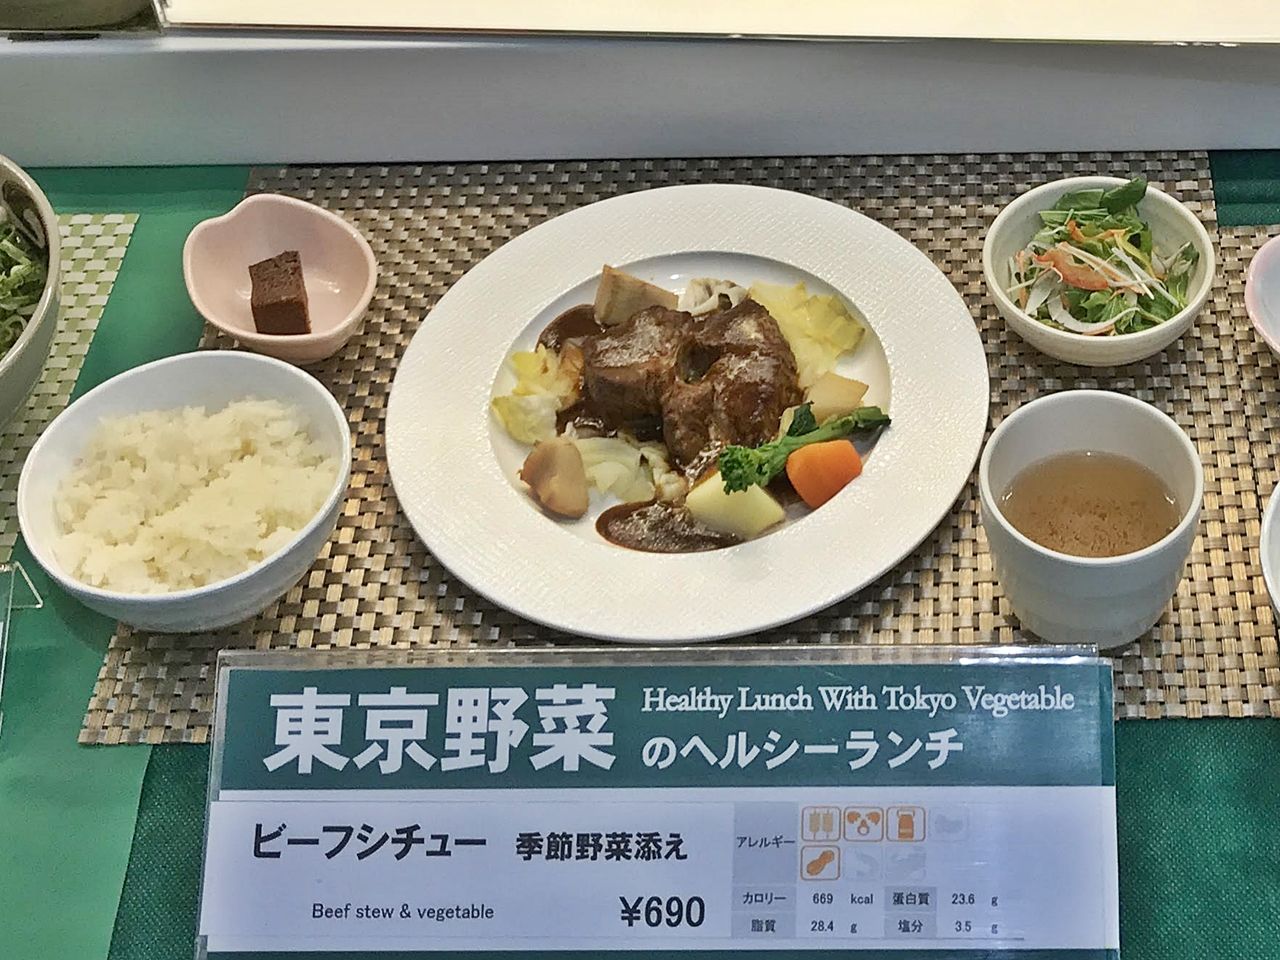 東京都庁の職員食堂で名物ランチと絶景を楽しもう 東京都 トラベルjp 旅行ガイド